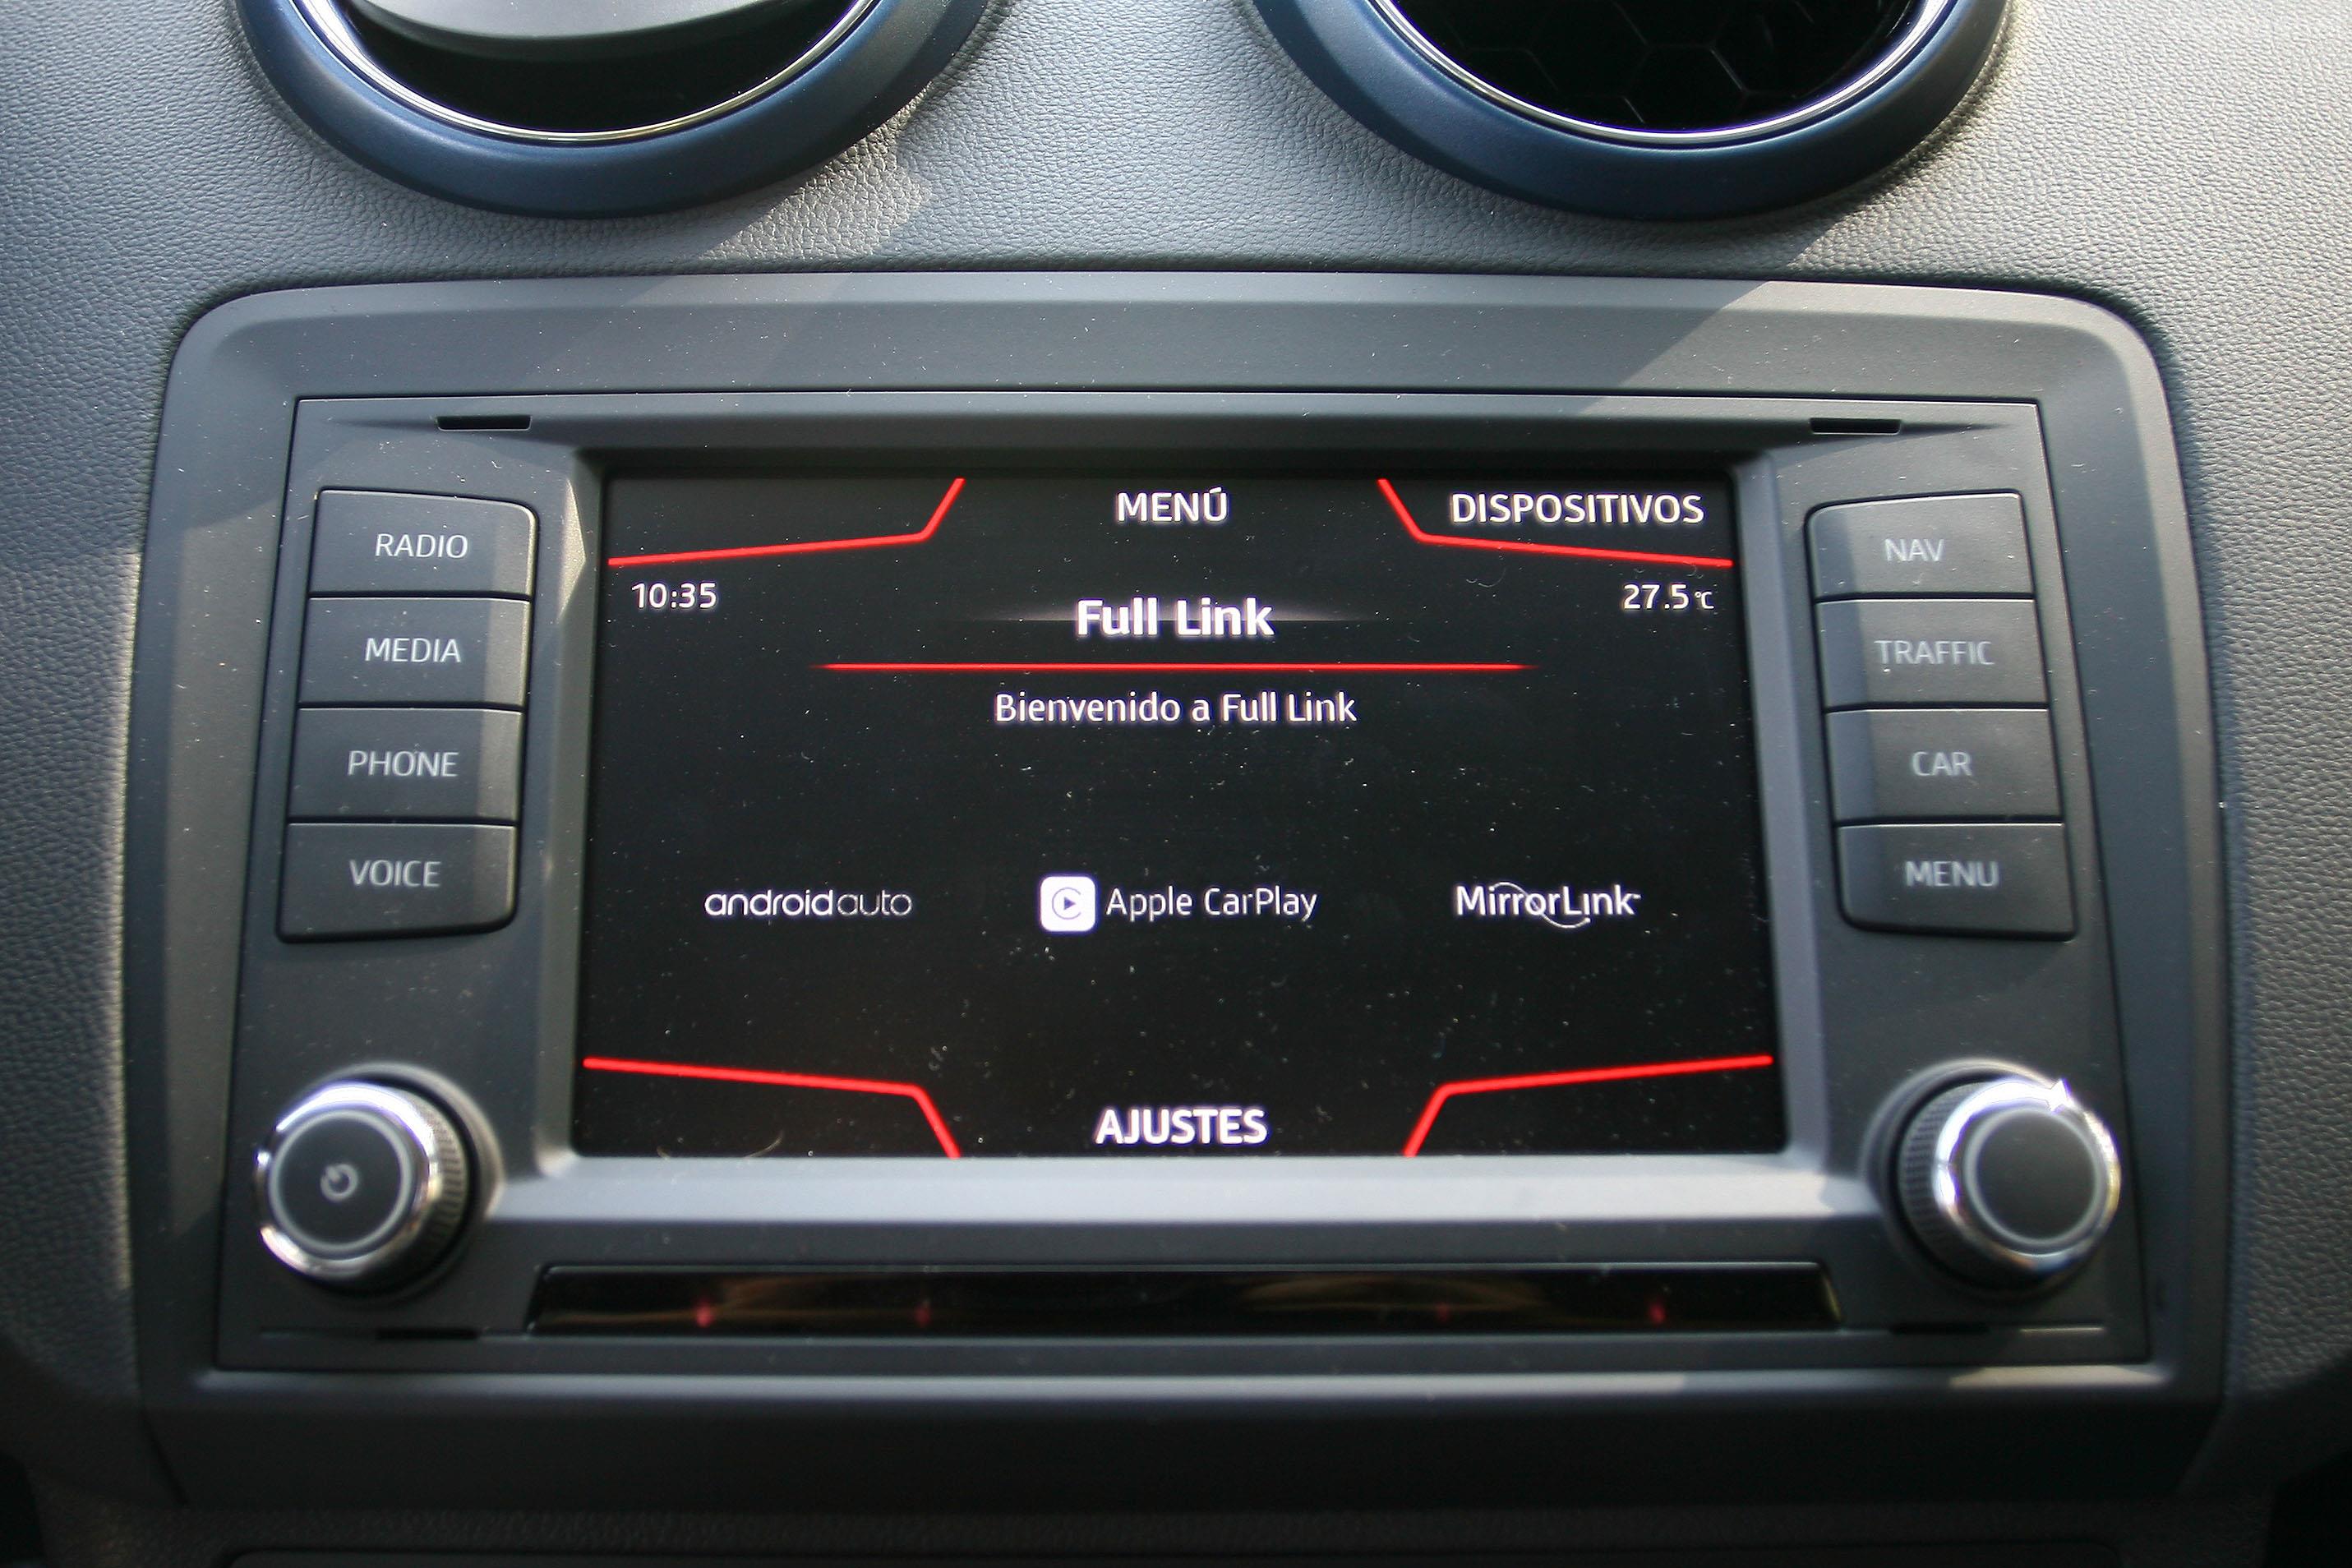 El sistema Full Link permite conectar cualquier smartphone al equipo del coche y visualizar las apps compatibles, a través de MirrorLink, Android Auto o Apple CarPlay.